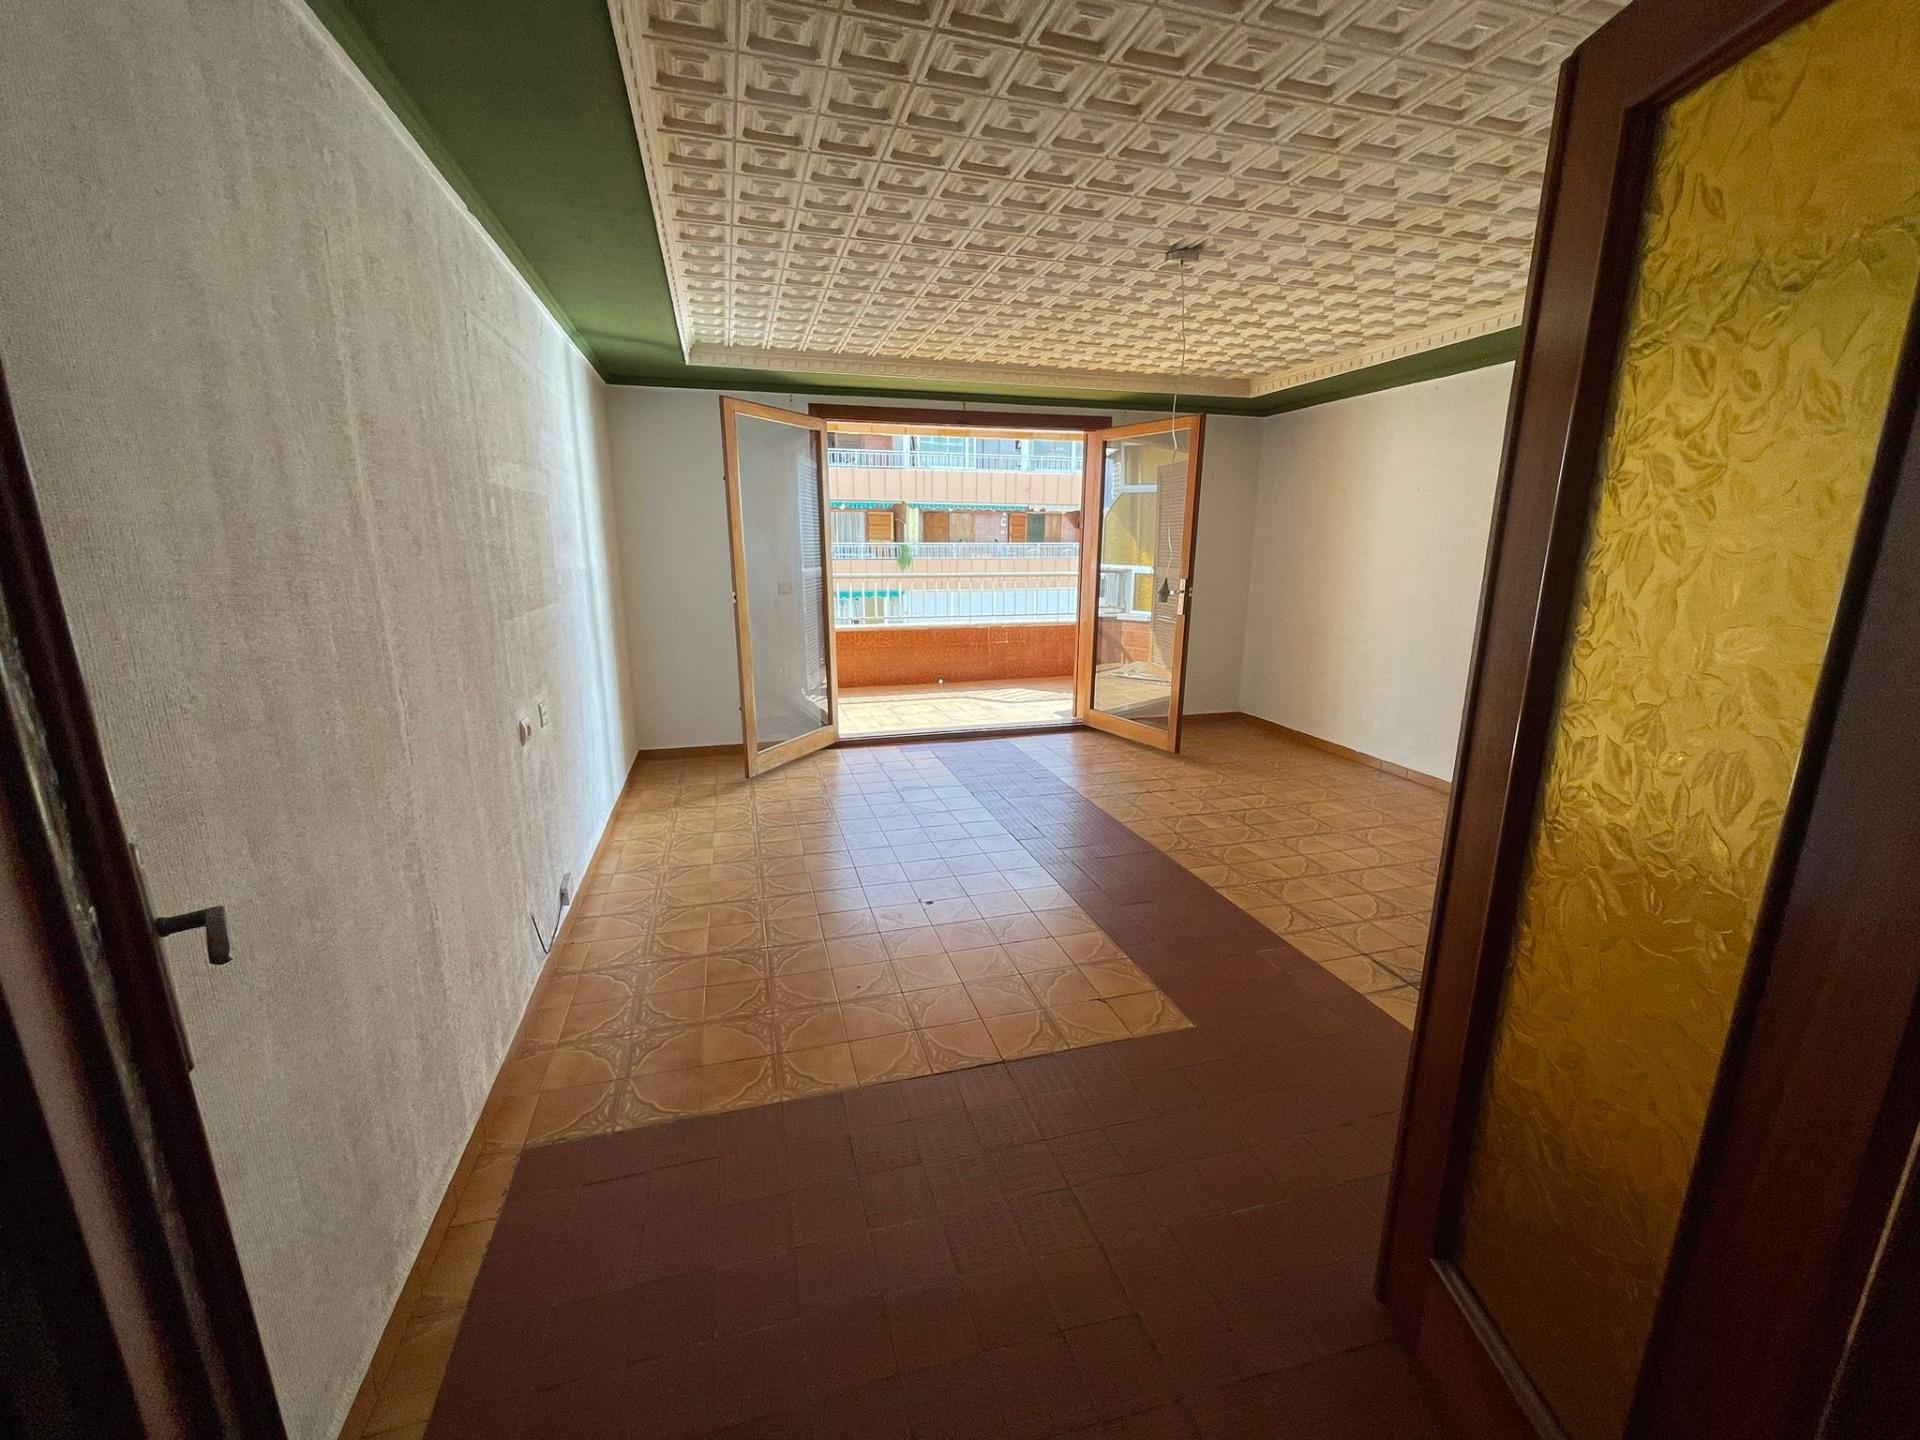 Apartamento en venta en Torrevieja